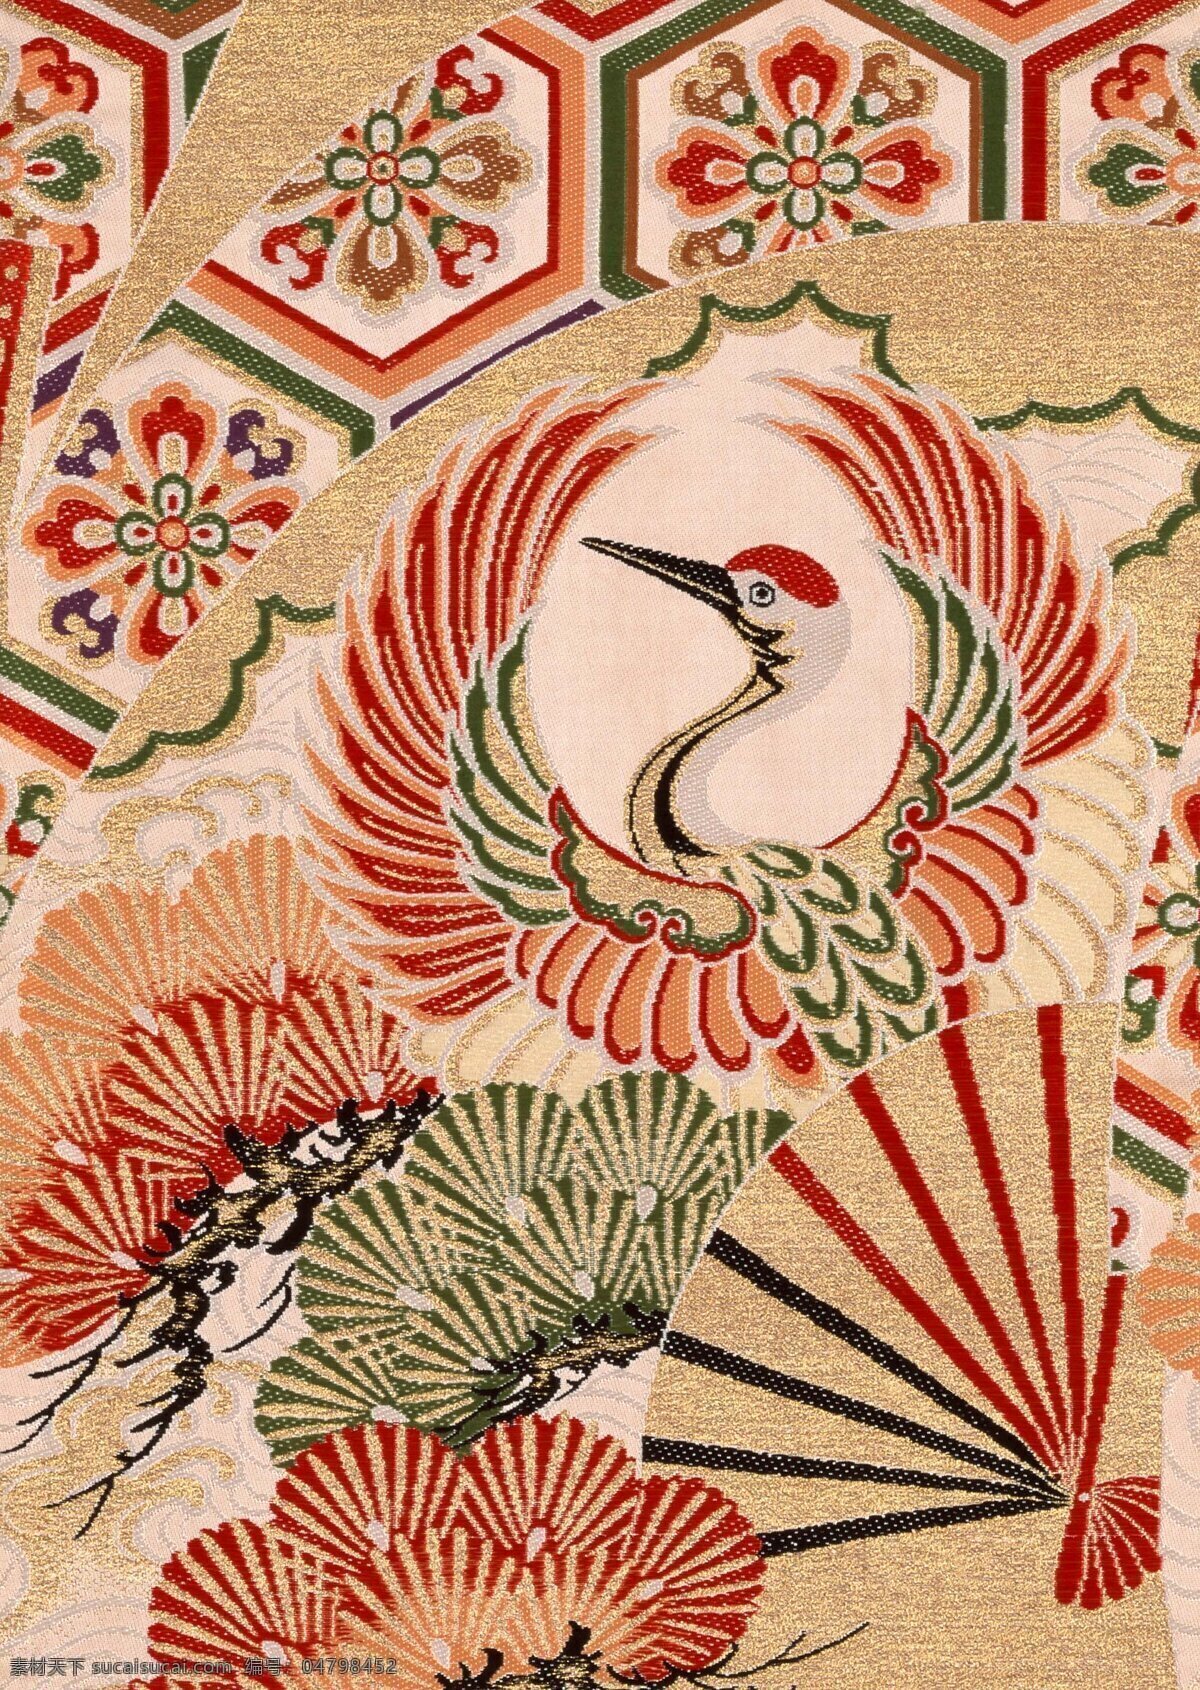 日本布纹 日本画 日式图案 日式屏风 日本彩绘 传统画 底纹 插画 布纹 绘画图文 文化艺术 绘画书法